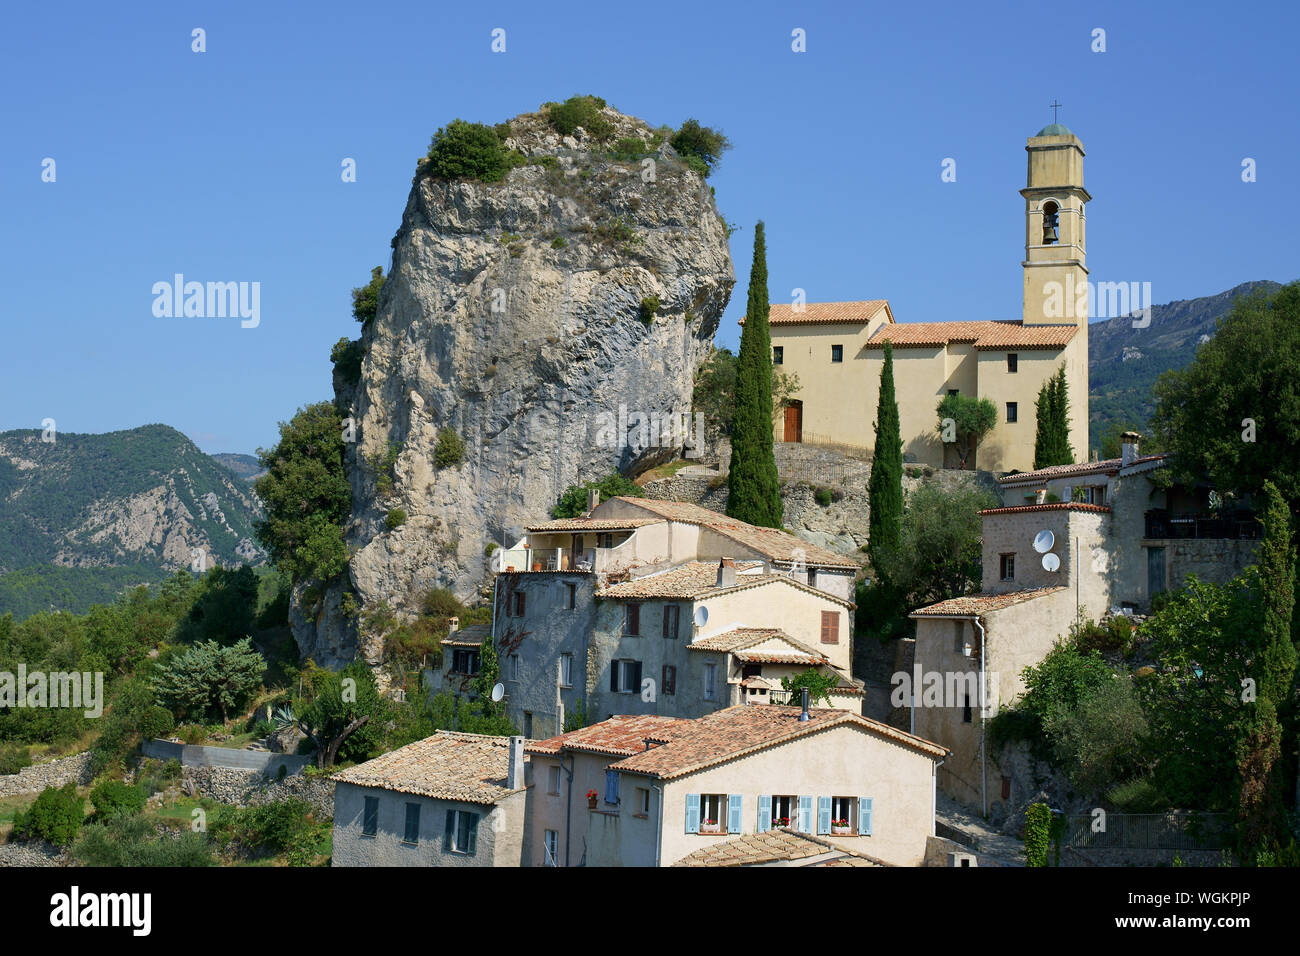 LUFTAUFNAHME von einem 6-Meter-Mast. Kalksteinmonolith, geneigt zu einer Kirche. Pierrefeu, Estéron Valley, Alpes-Maritimes, Frankreich. Stockfoto